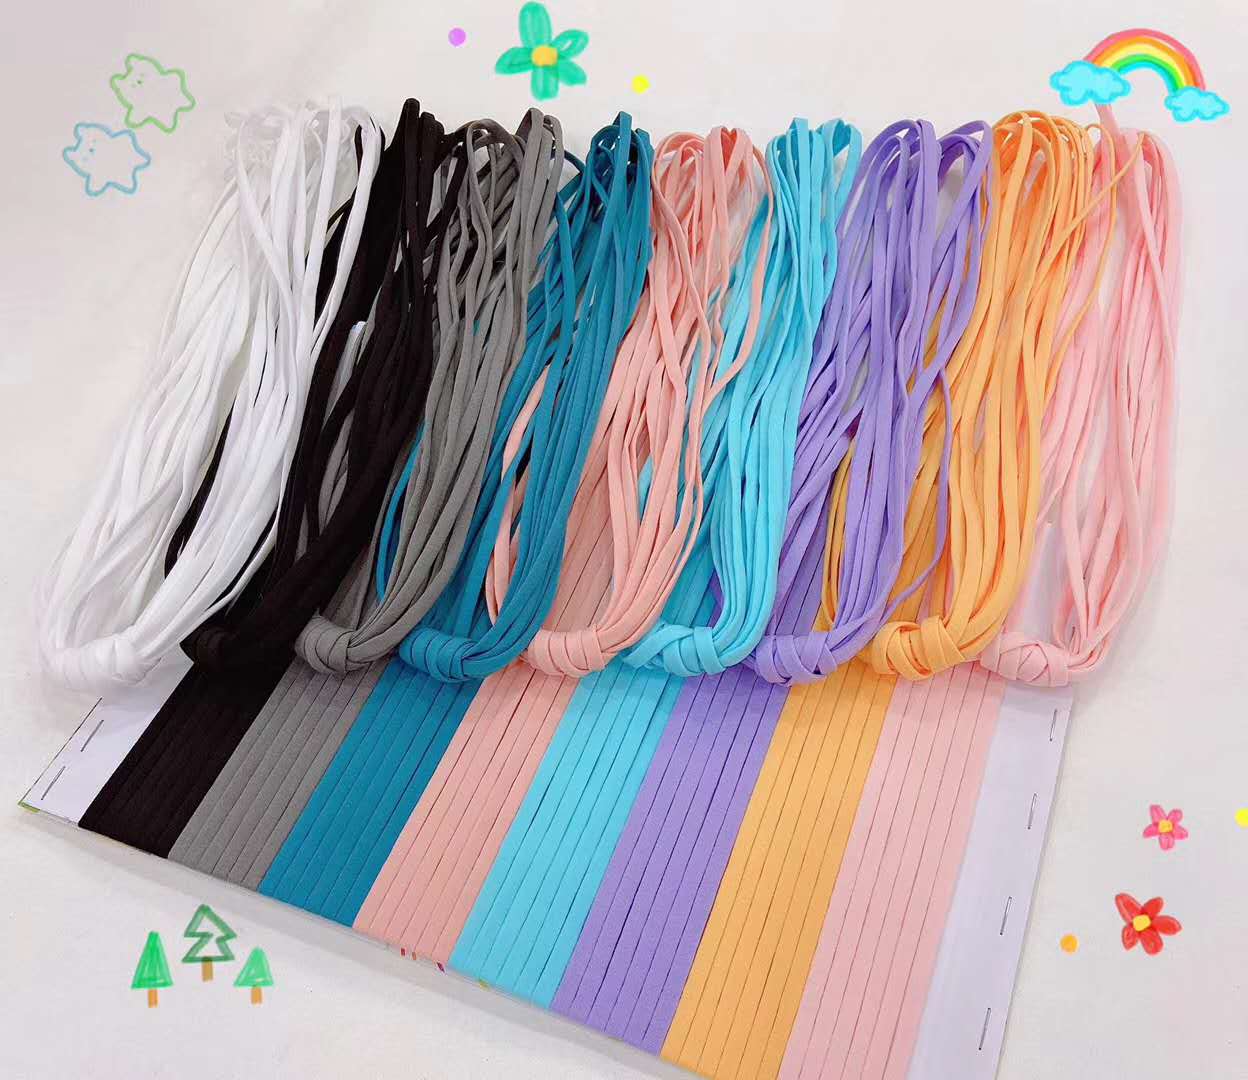 色條紋尼龍織帶,口罩耳帶繩,七彩織帶,印刷織帶,松緊帶,花邊帶,繩類織帶,編織帶,特殊織帶